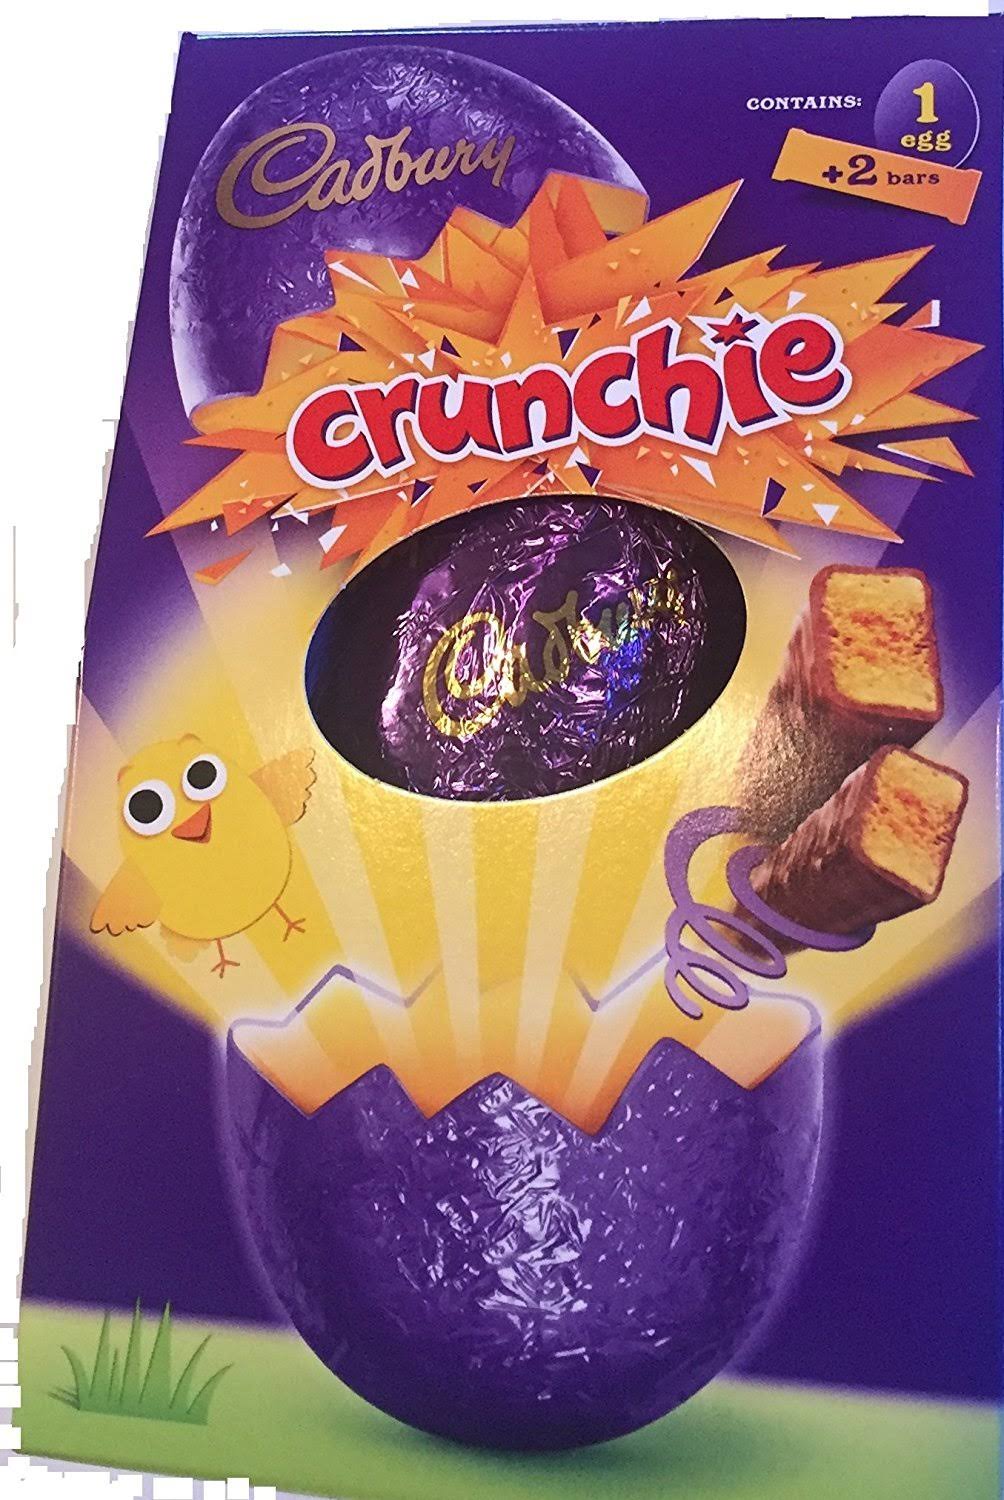 Cadbury Crunchie Chocolate Medium Easter Egg - Box Slightly Damaged